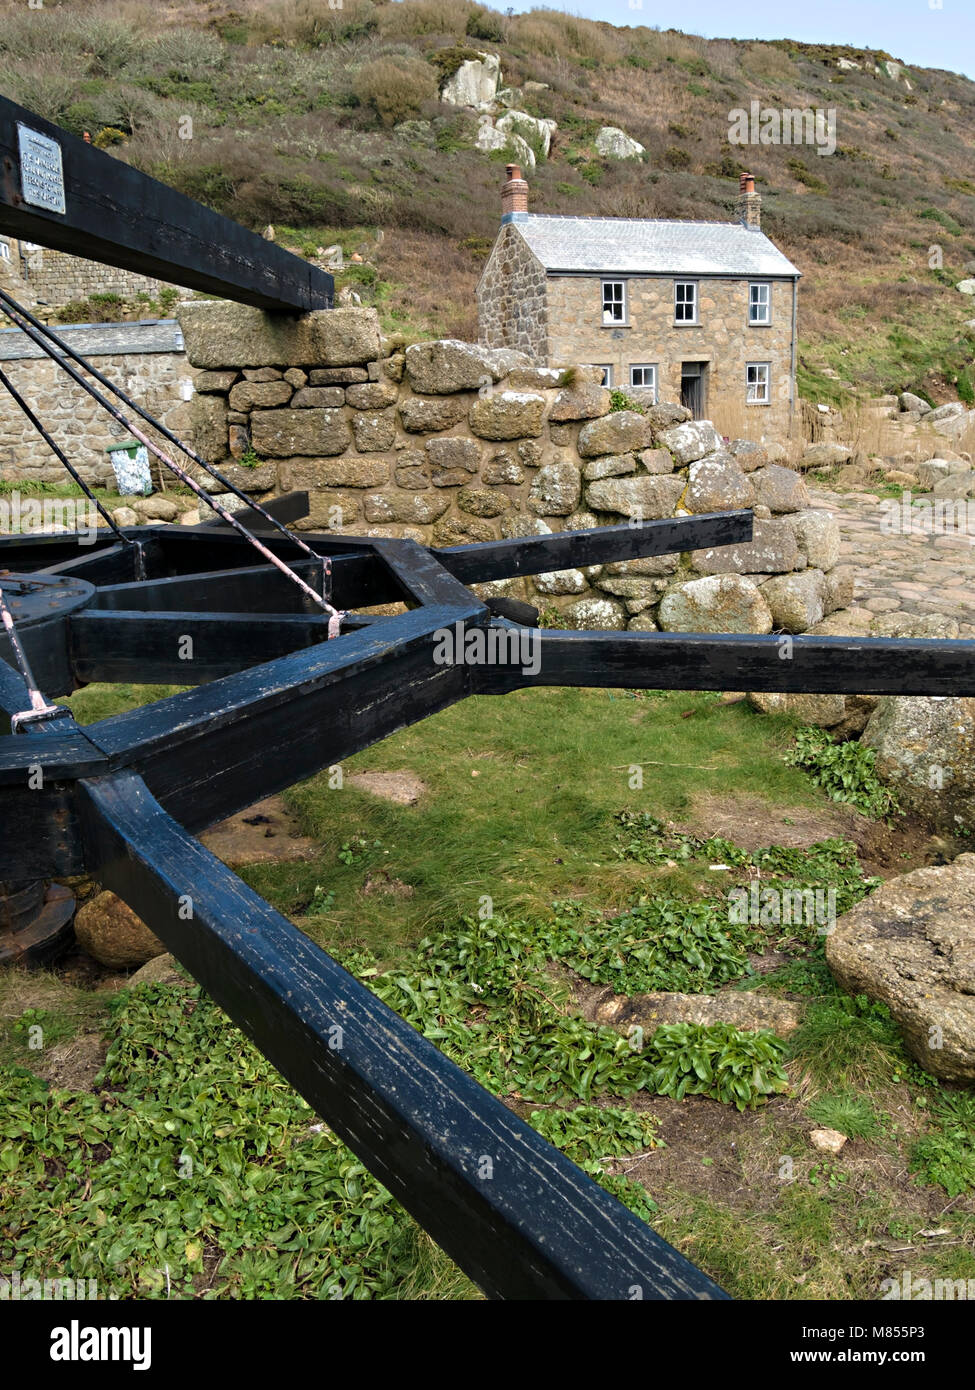 Vecchia barca argano verricello e Cornish cottage a Penberth Cove Harbour, Cornwall, Inghilterra, Regno Unito. La posizione era usato durante le riprese Poldark BBC serie TV. Foto Stock